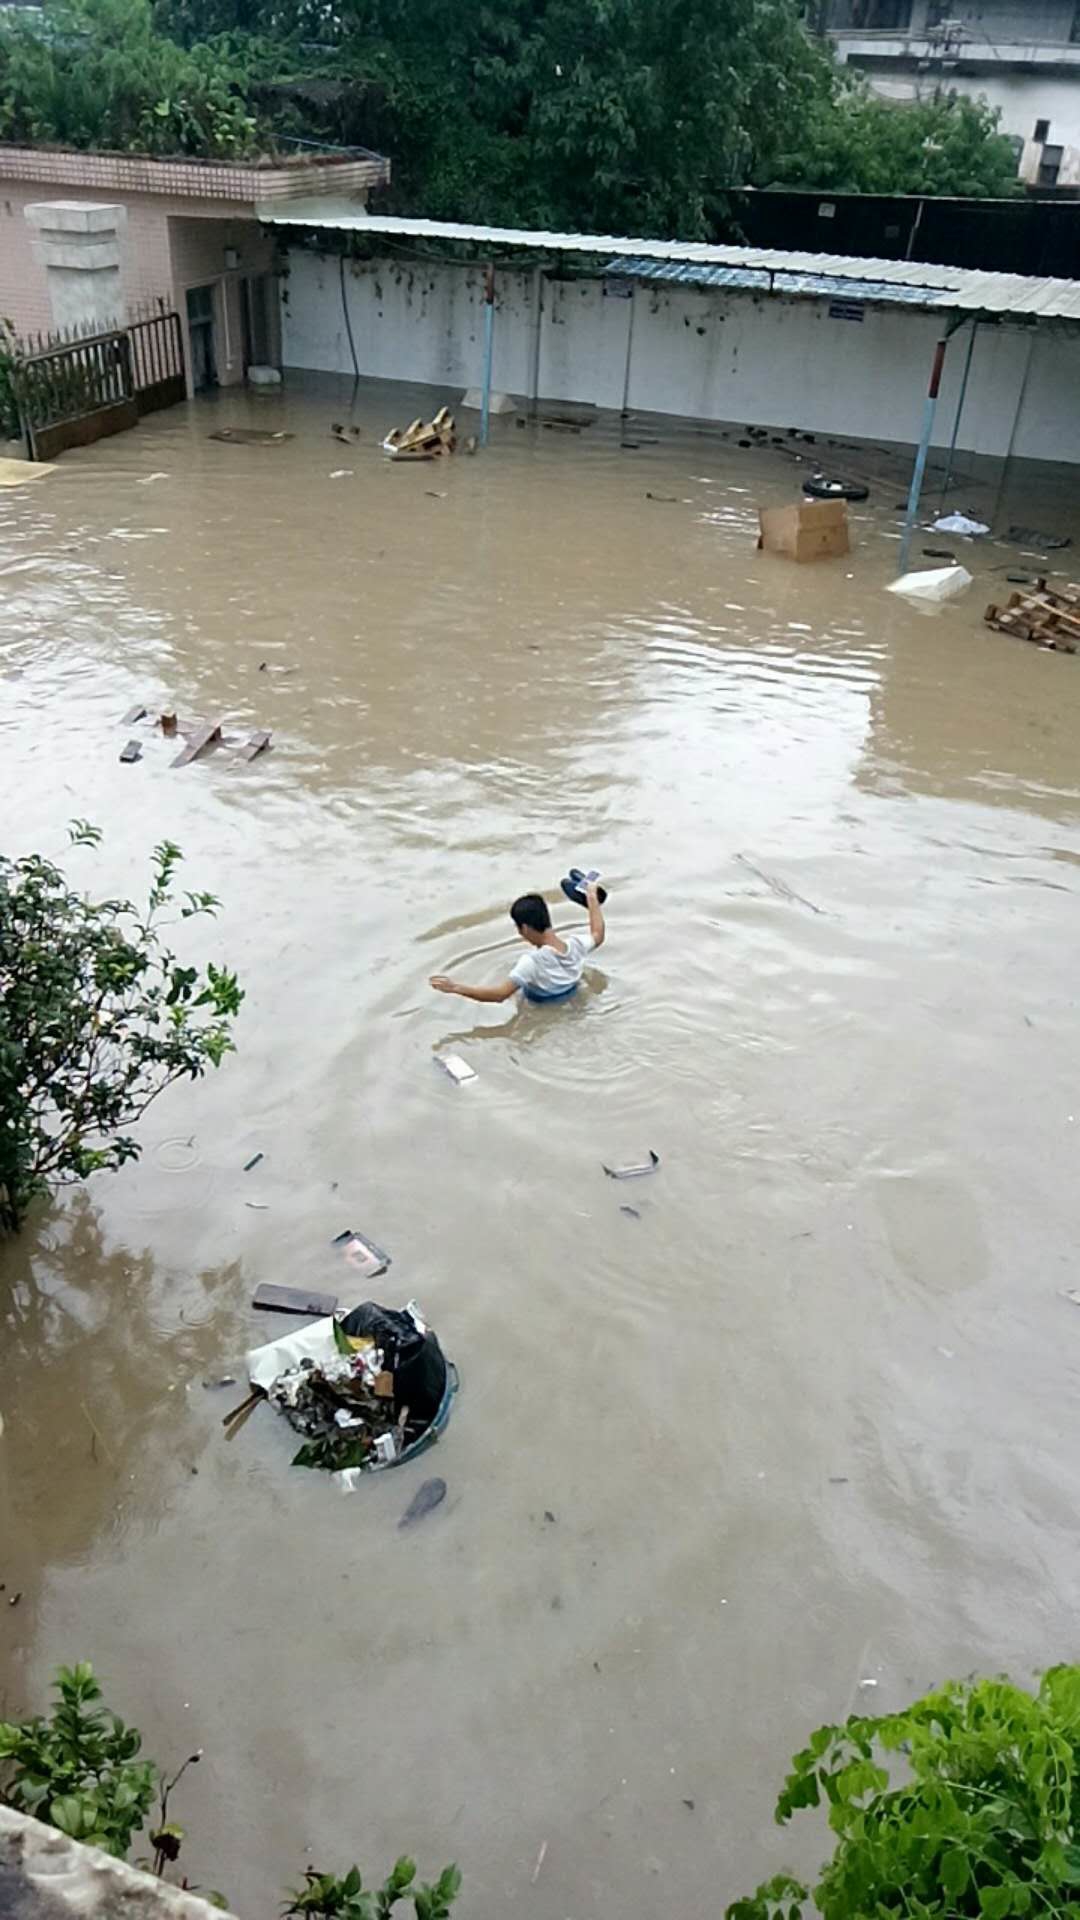 广州突降暴雨 多地出现水浸堵车[2]- 中国日报网